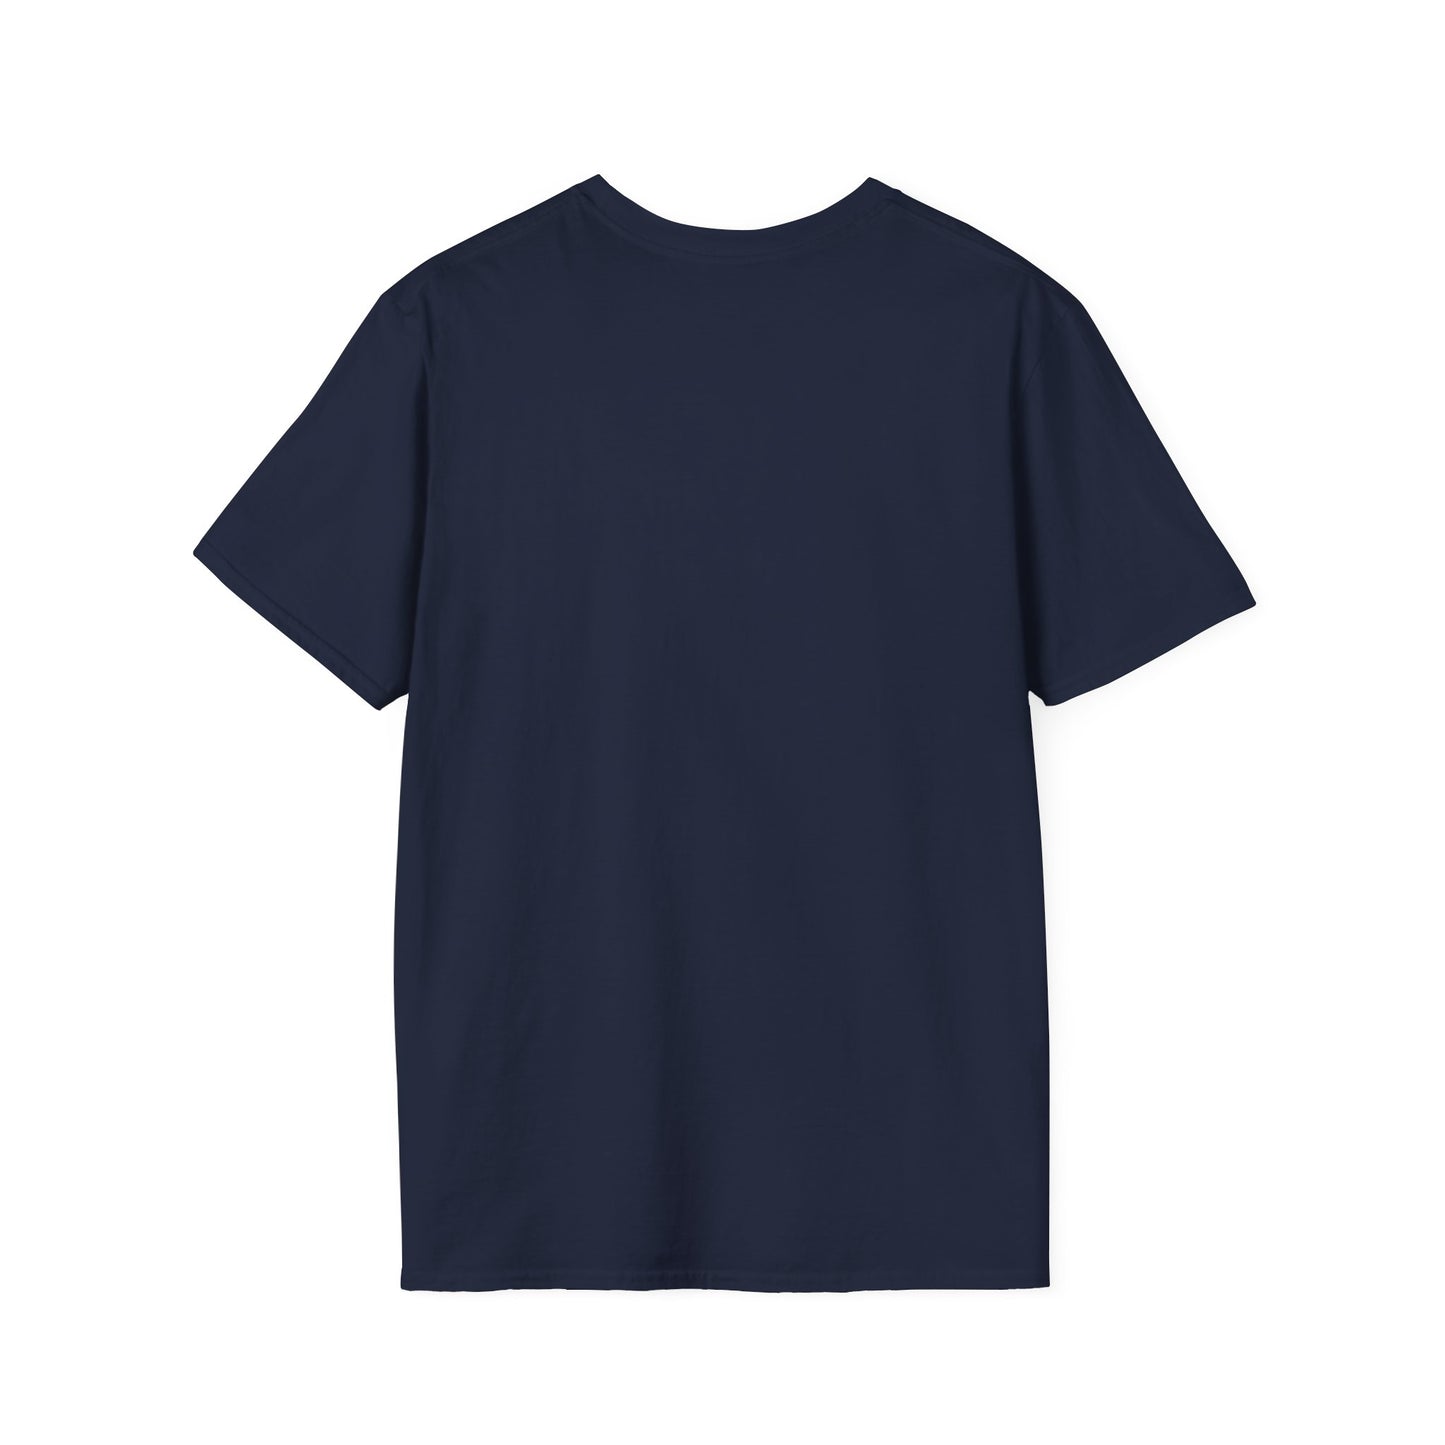 New Jack City Unisex Softstyle T-Shirt